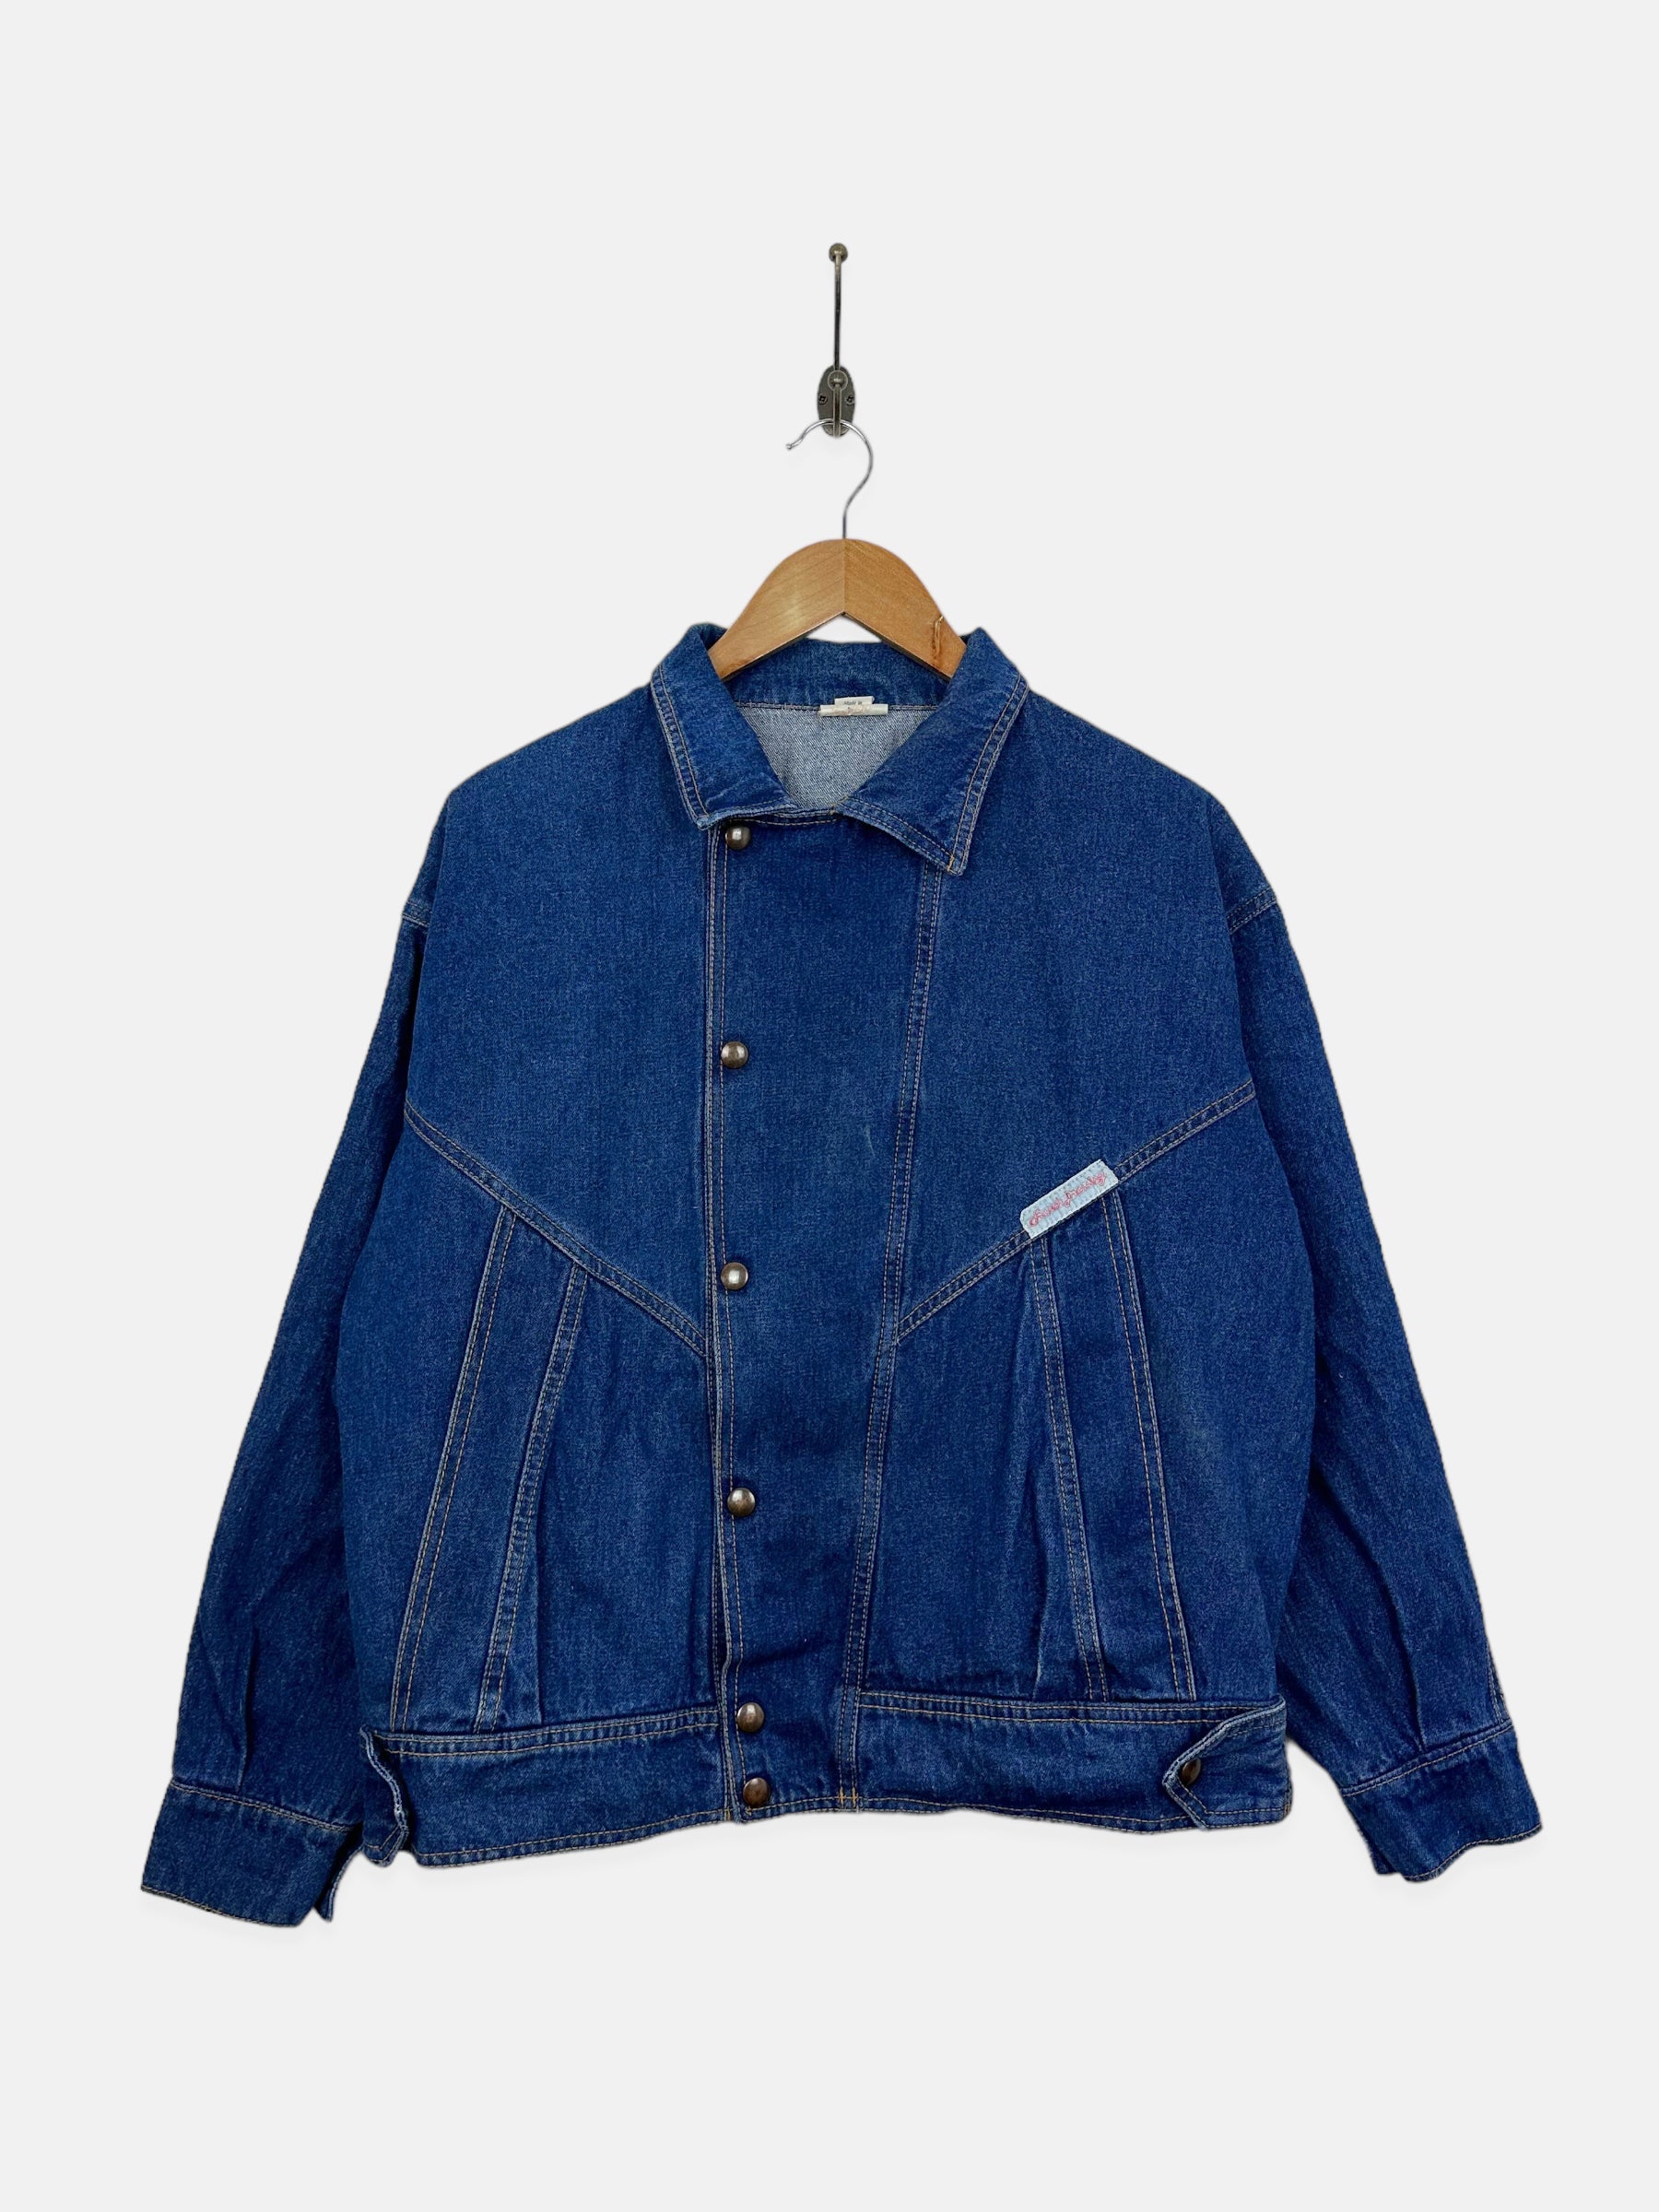 Jackets – Good Ol' Vintage